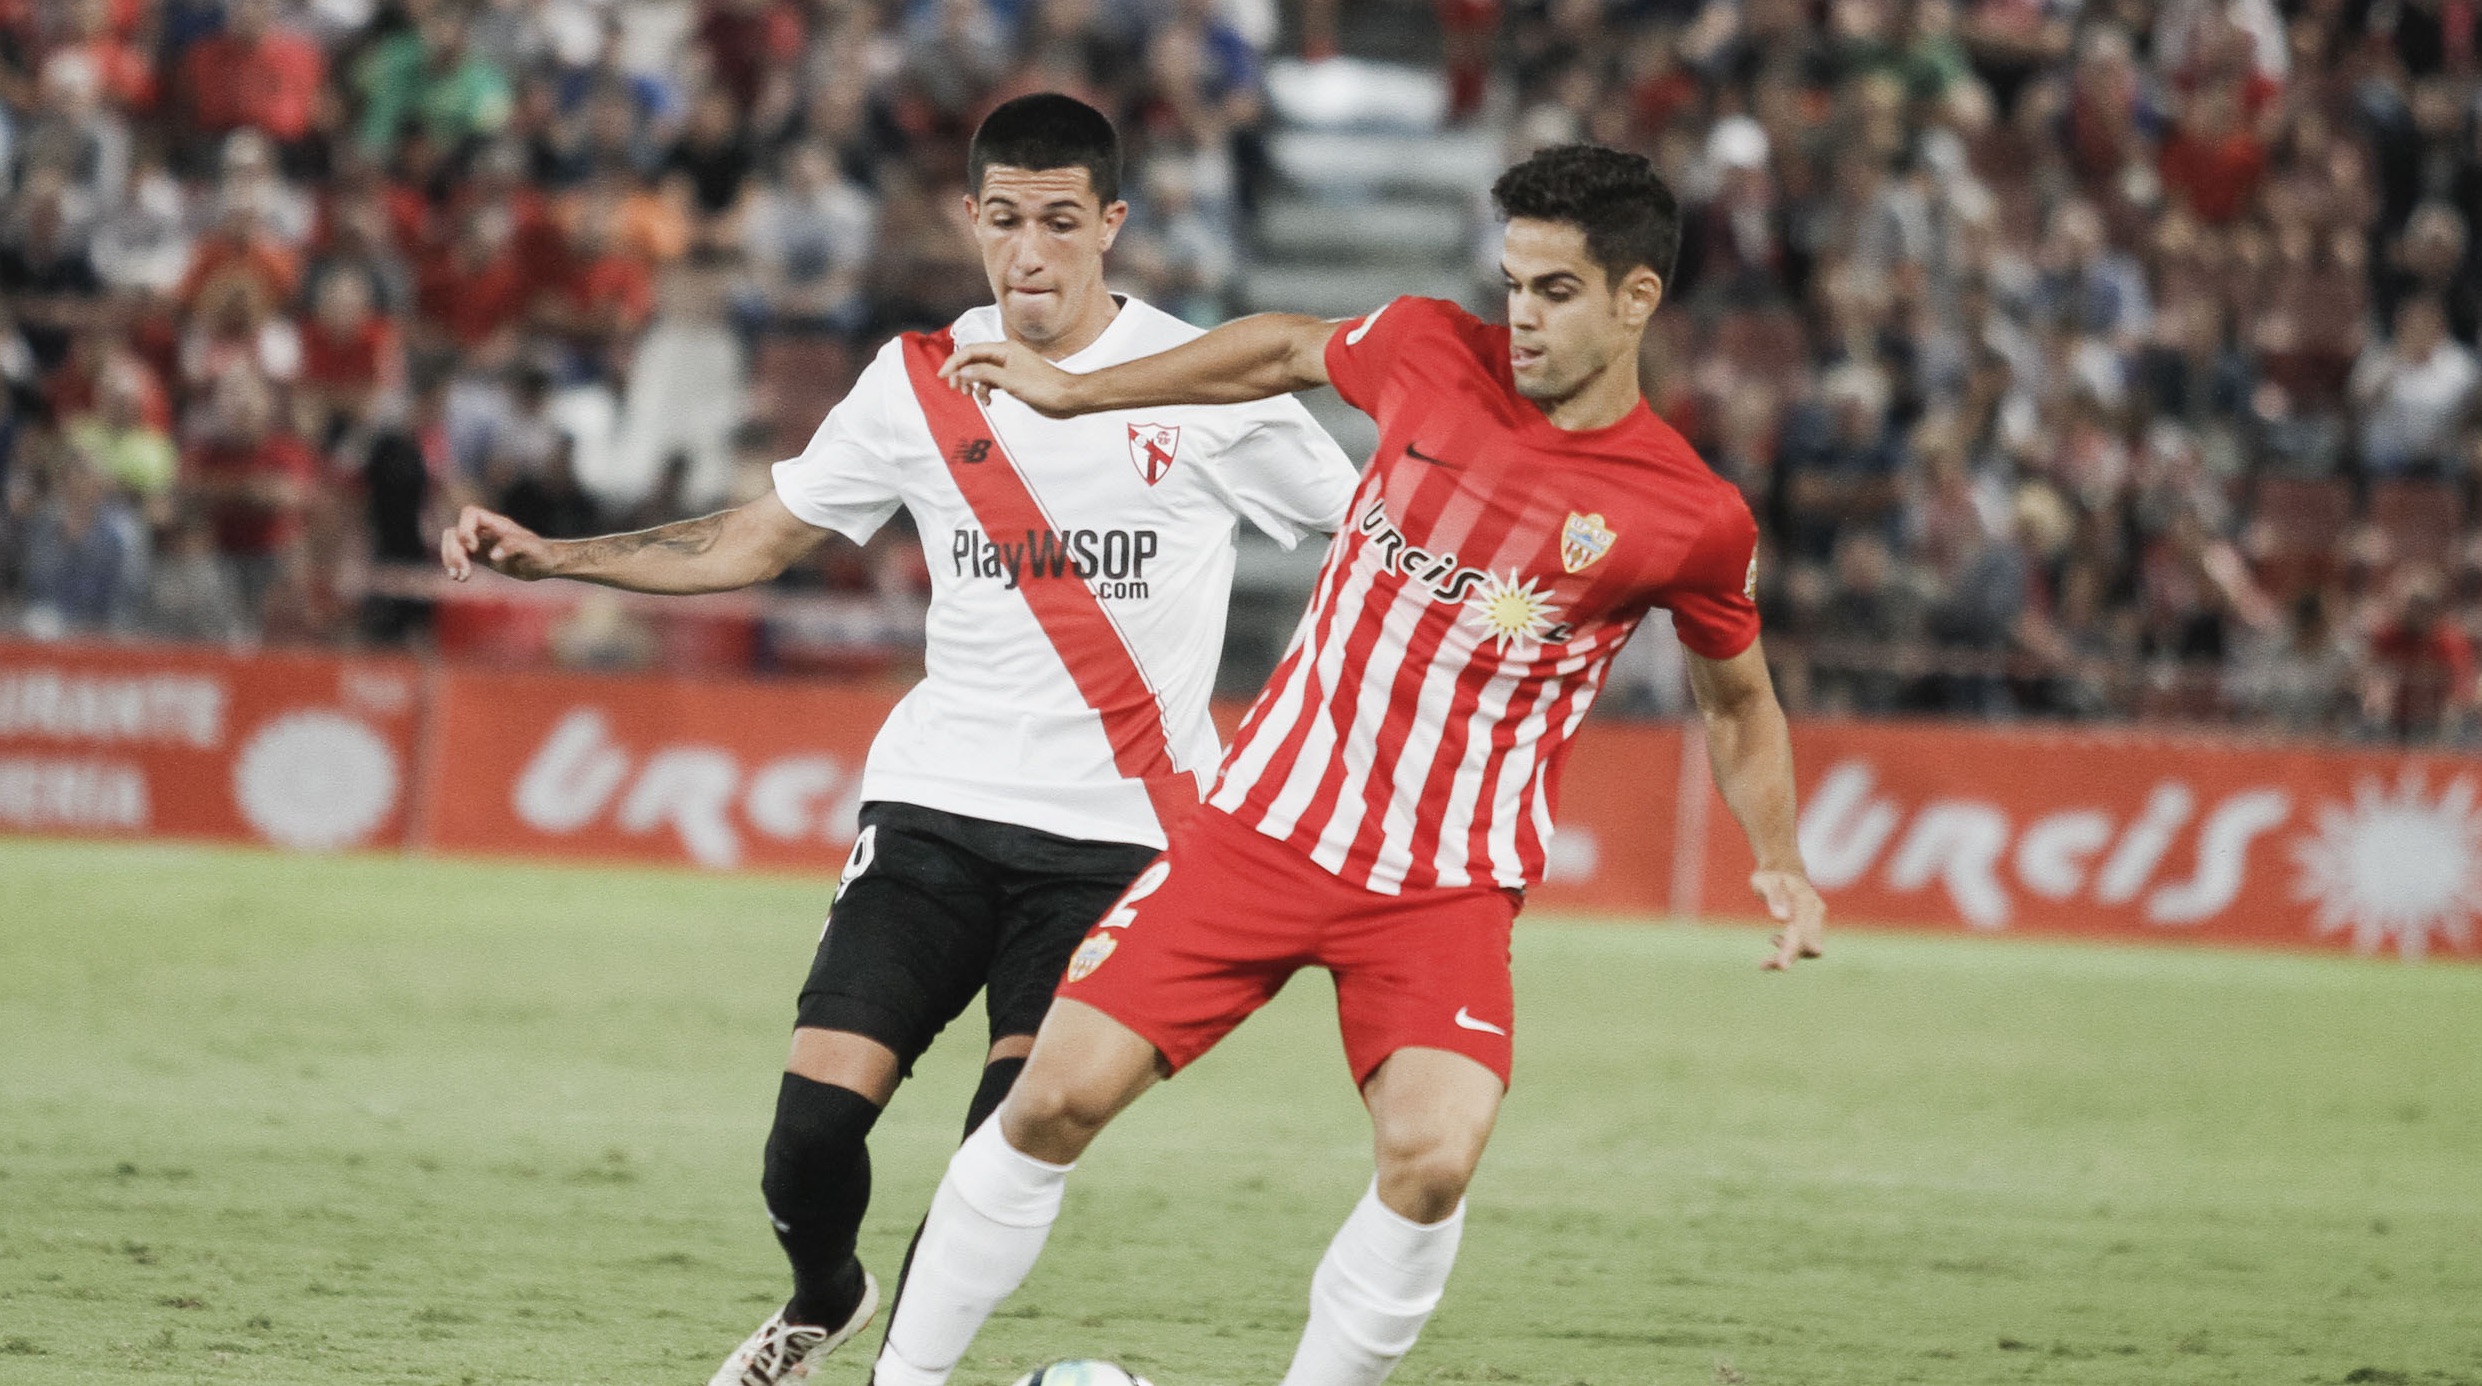 Imagen del Sevilla Atlético en Almería